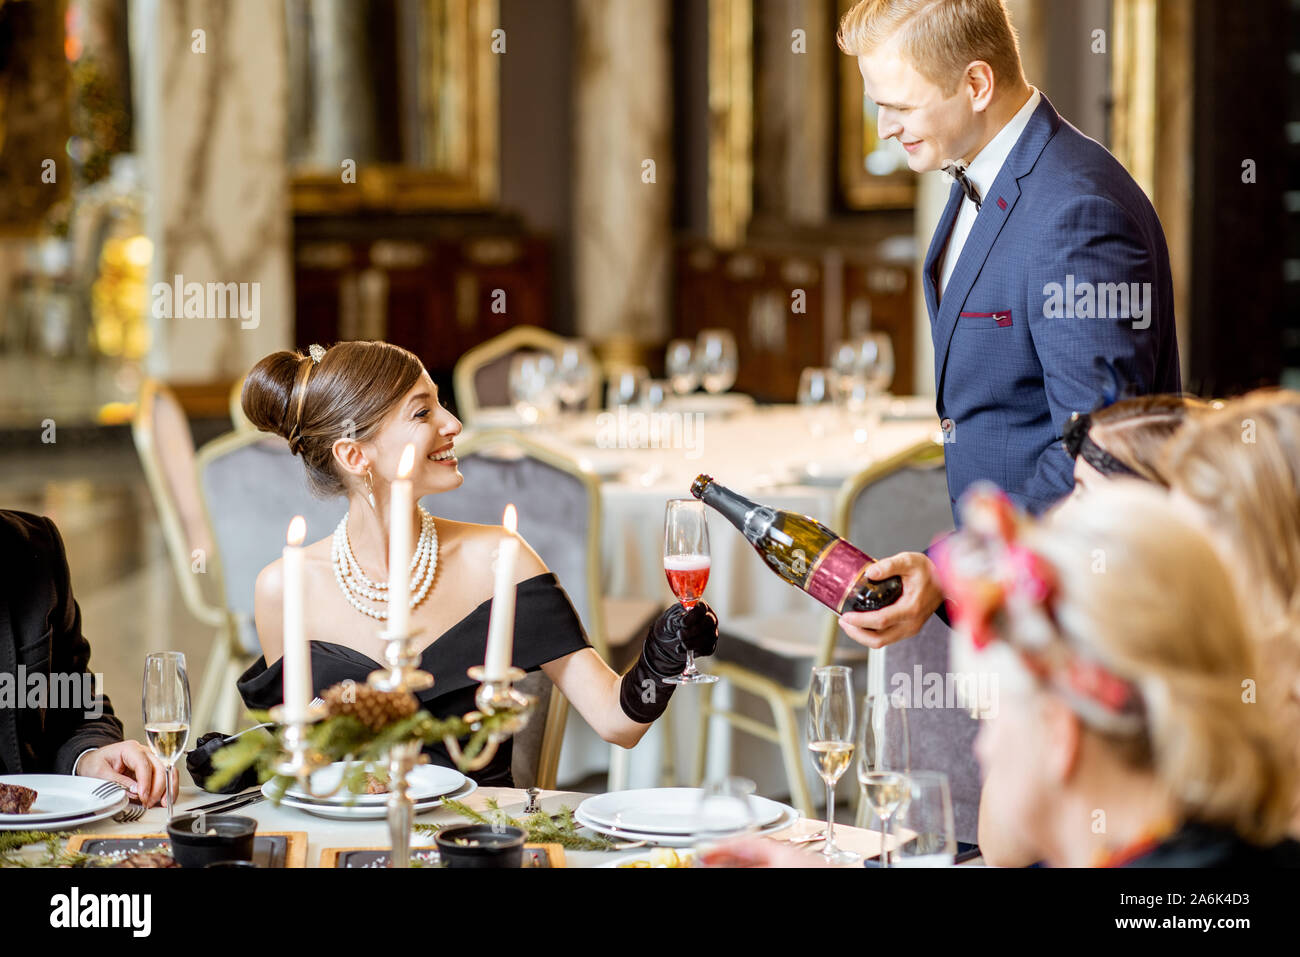 Elegant gekleidete Menschen mit einem festlichen Abendessen während einer Silvester im luxuriösen Restaurant, Kellner serviert Gerichte und Abfüllung Weingläser Stockfoto